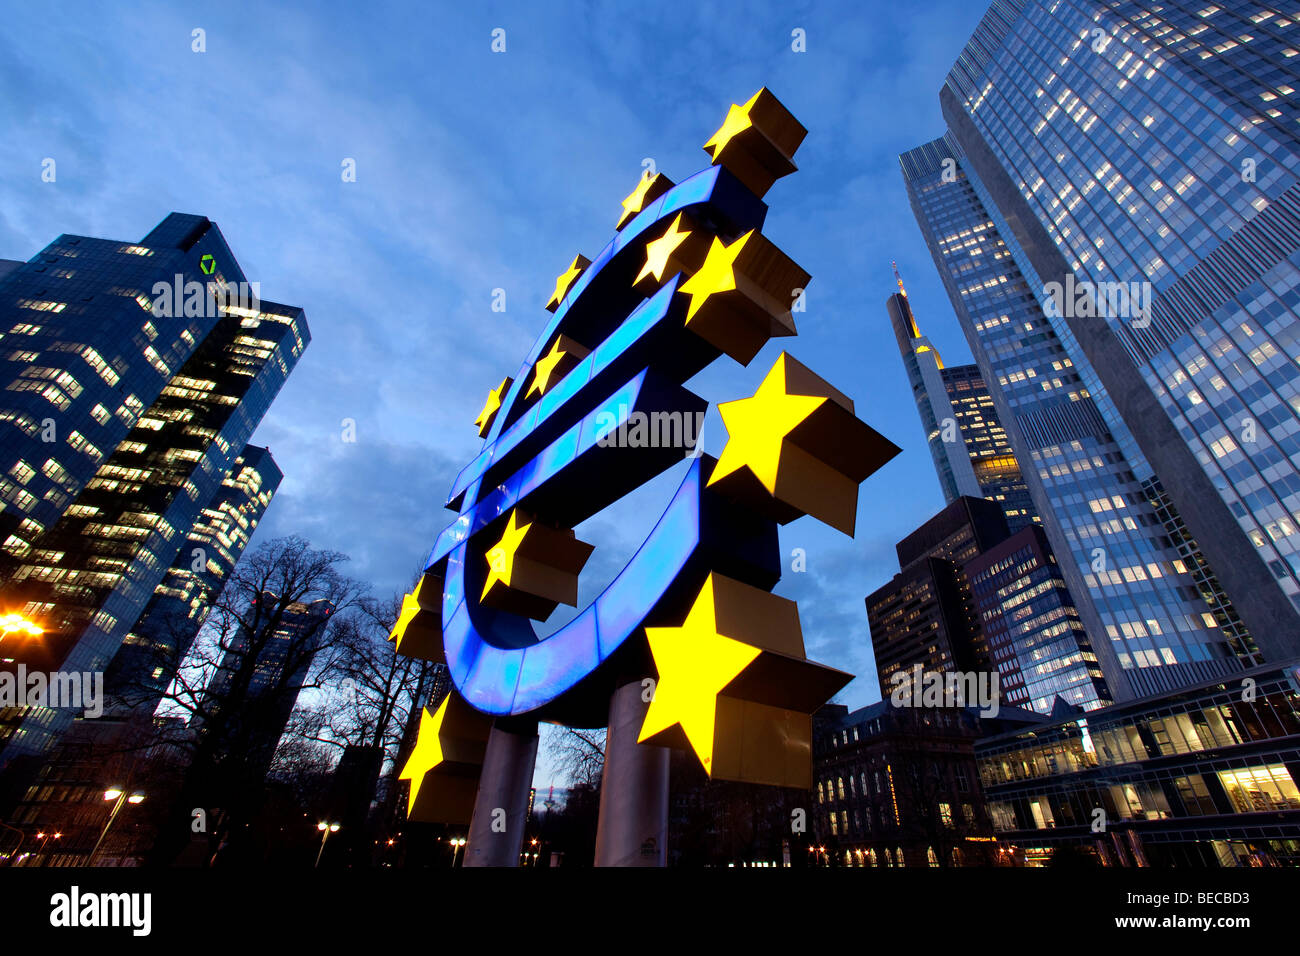 Banque centrale européenne, à droite, avec le symbole euro et Dresdner Bank, à gauche, à Frankfurt am Main, Hesse, Germany, Europe Banque D'Images